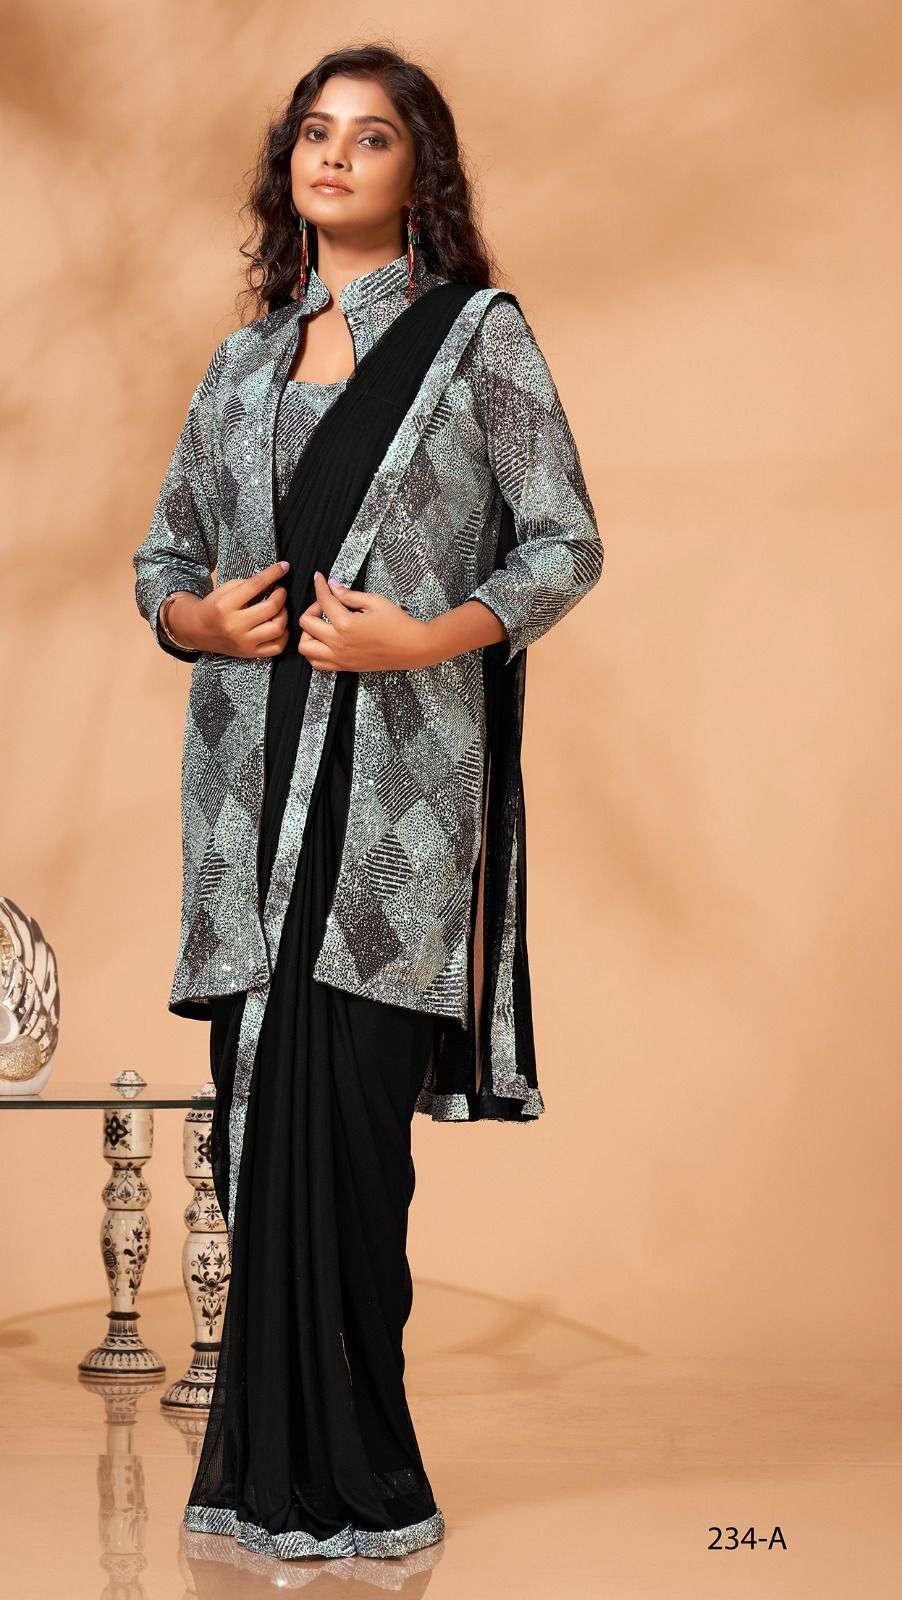 Nusrat Jahan: बंगाली एक्ट्रेस नुसरत जहां ने साड़ी के ऊपर पहनी डेनिम जैकेट,  फैंस बोले- ये कौन सा फैशन है?, Nusrat Jahan wear saree with denim jacket  and trolled for fashion experiment